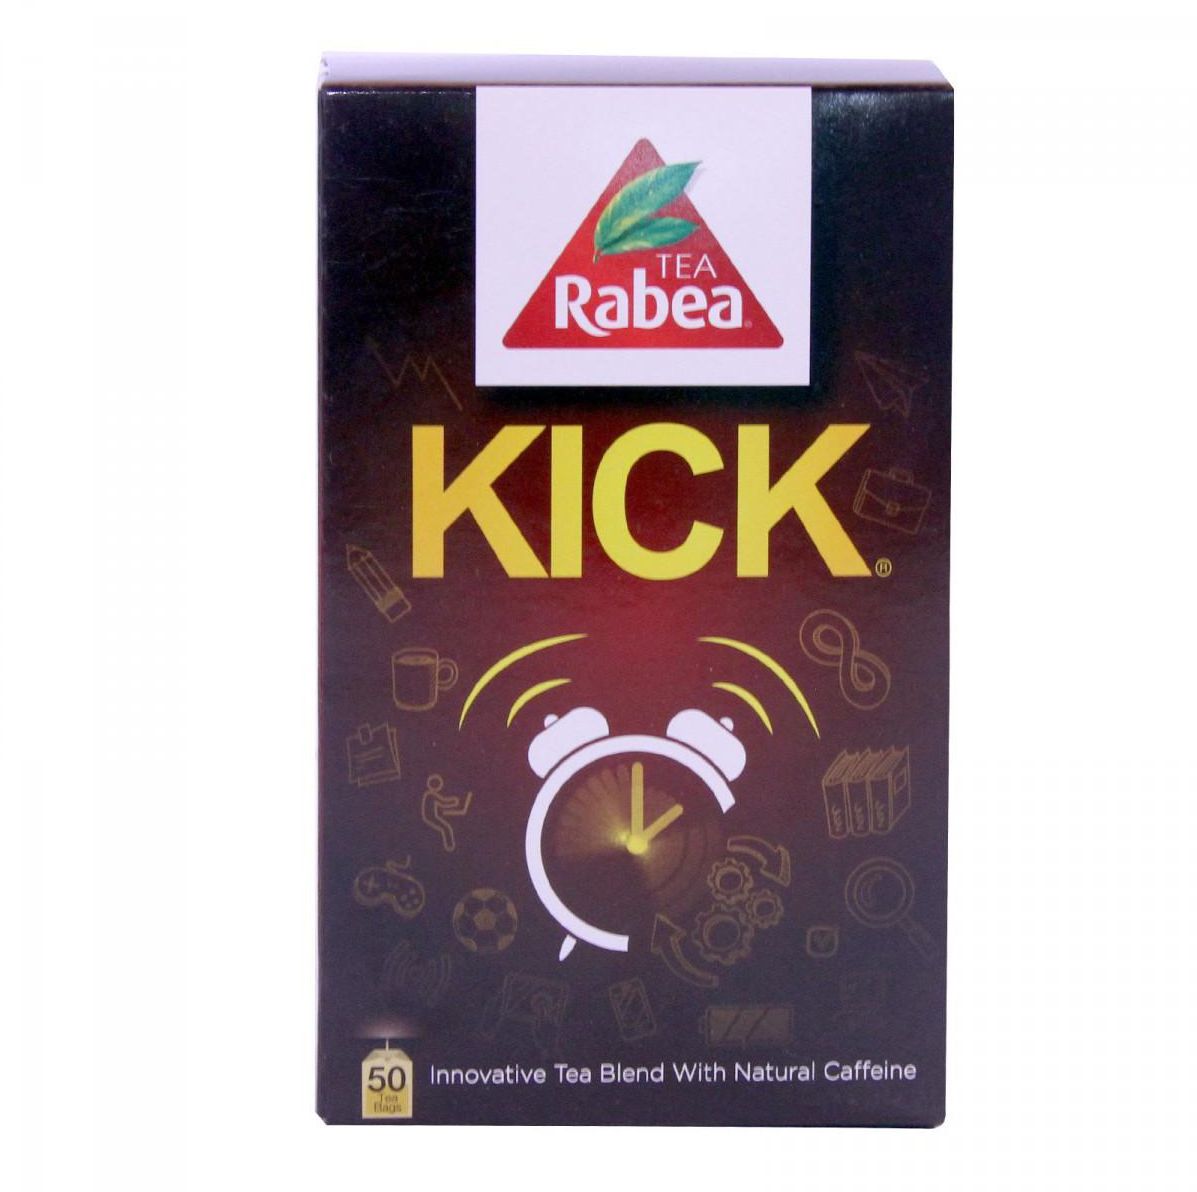 Rabea Kick Tea (50 Tea Bags)